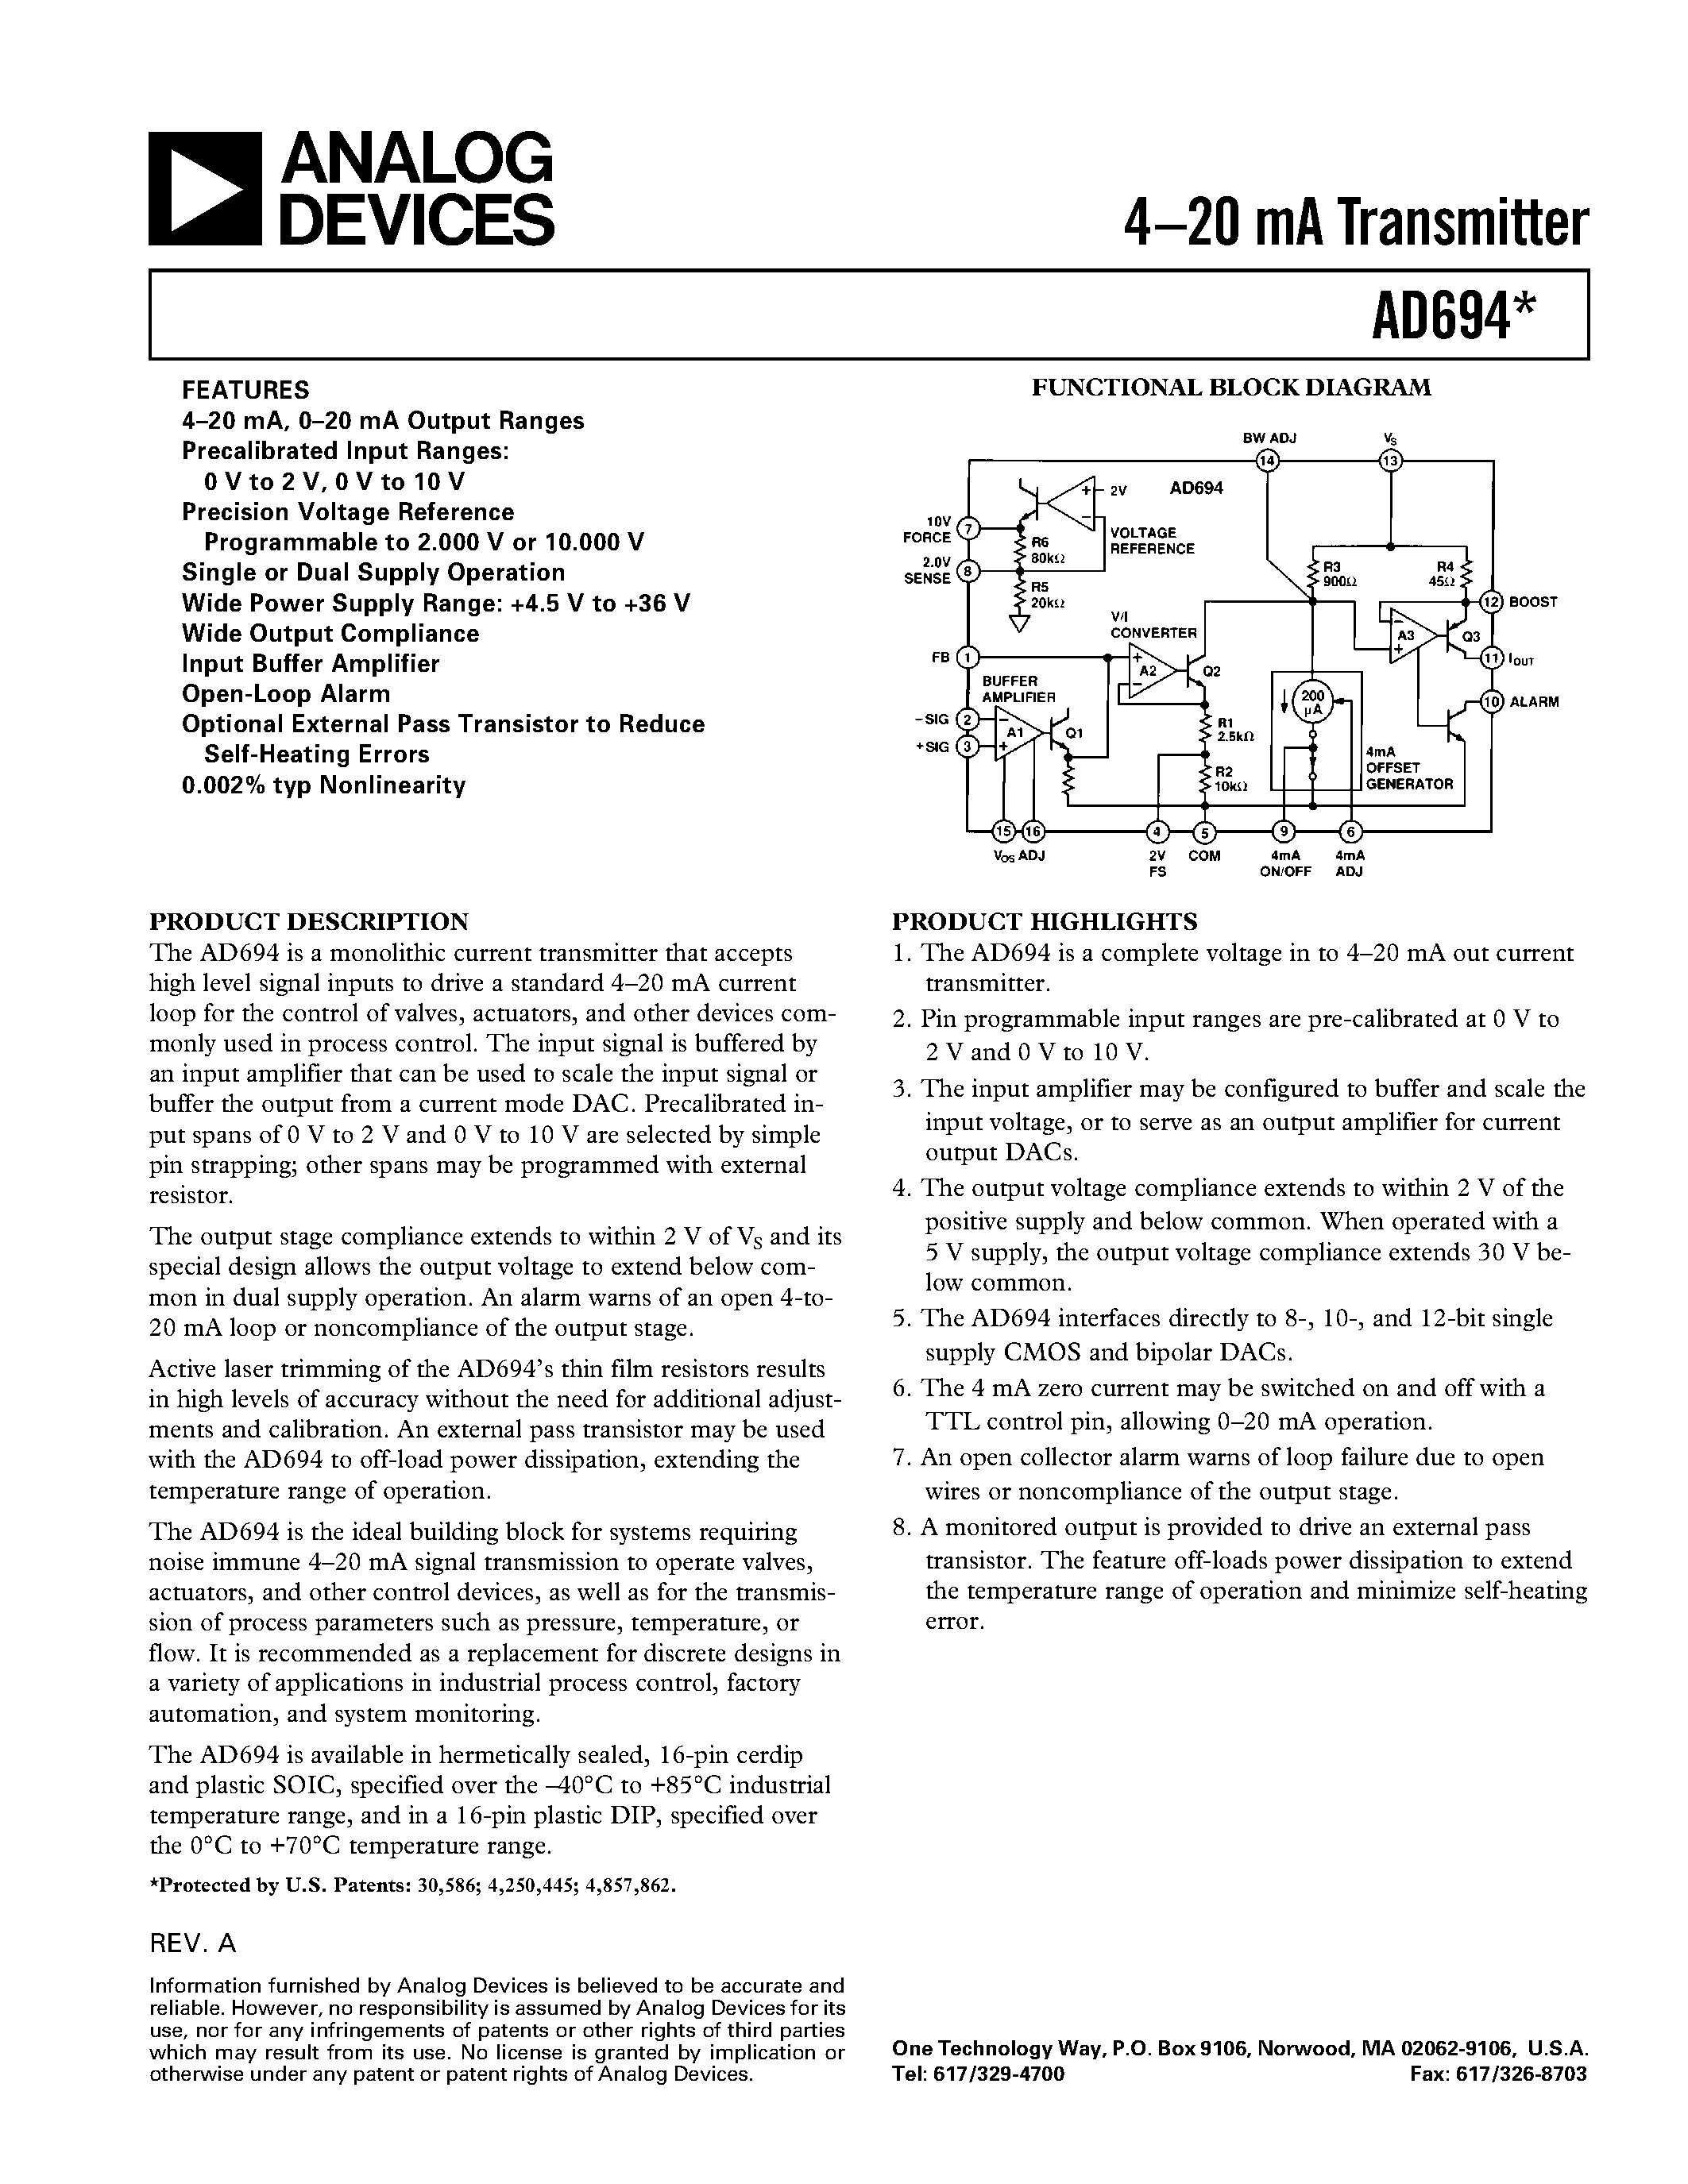 Даташит AD694BQ - 4.20 mA Transmitter страница 1